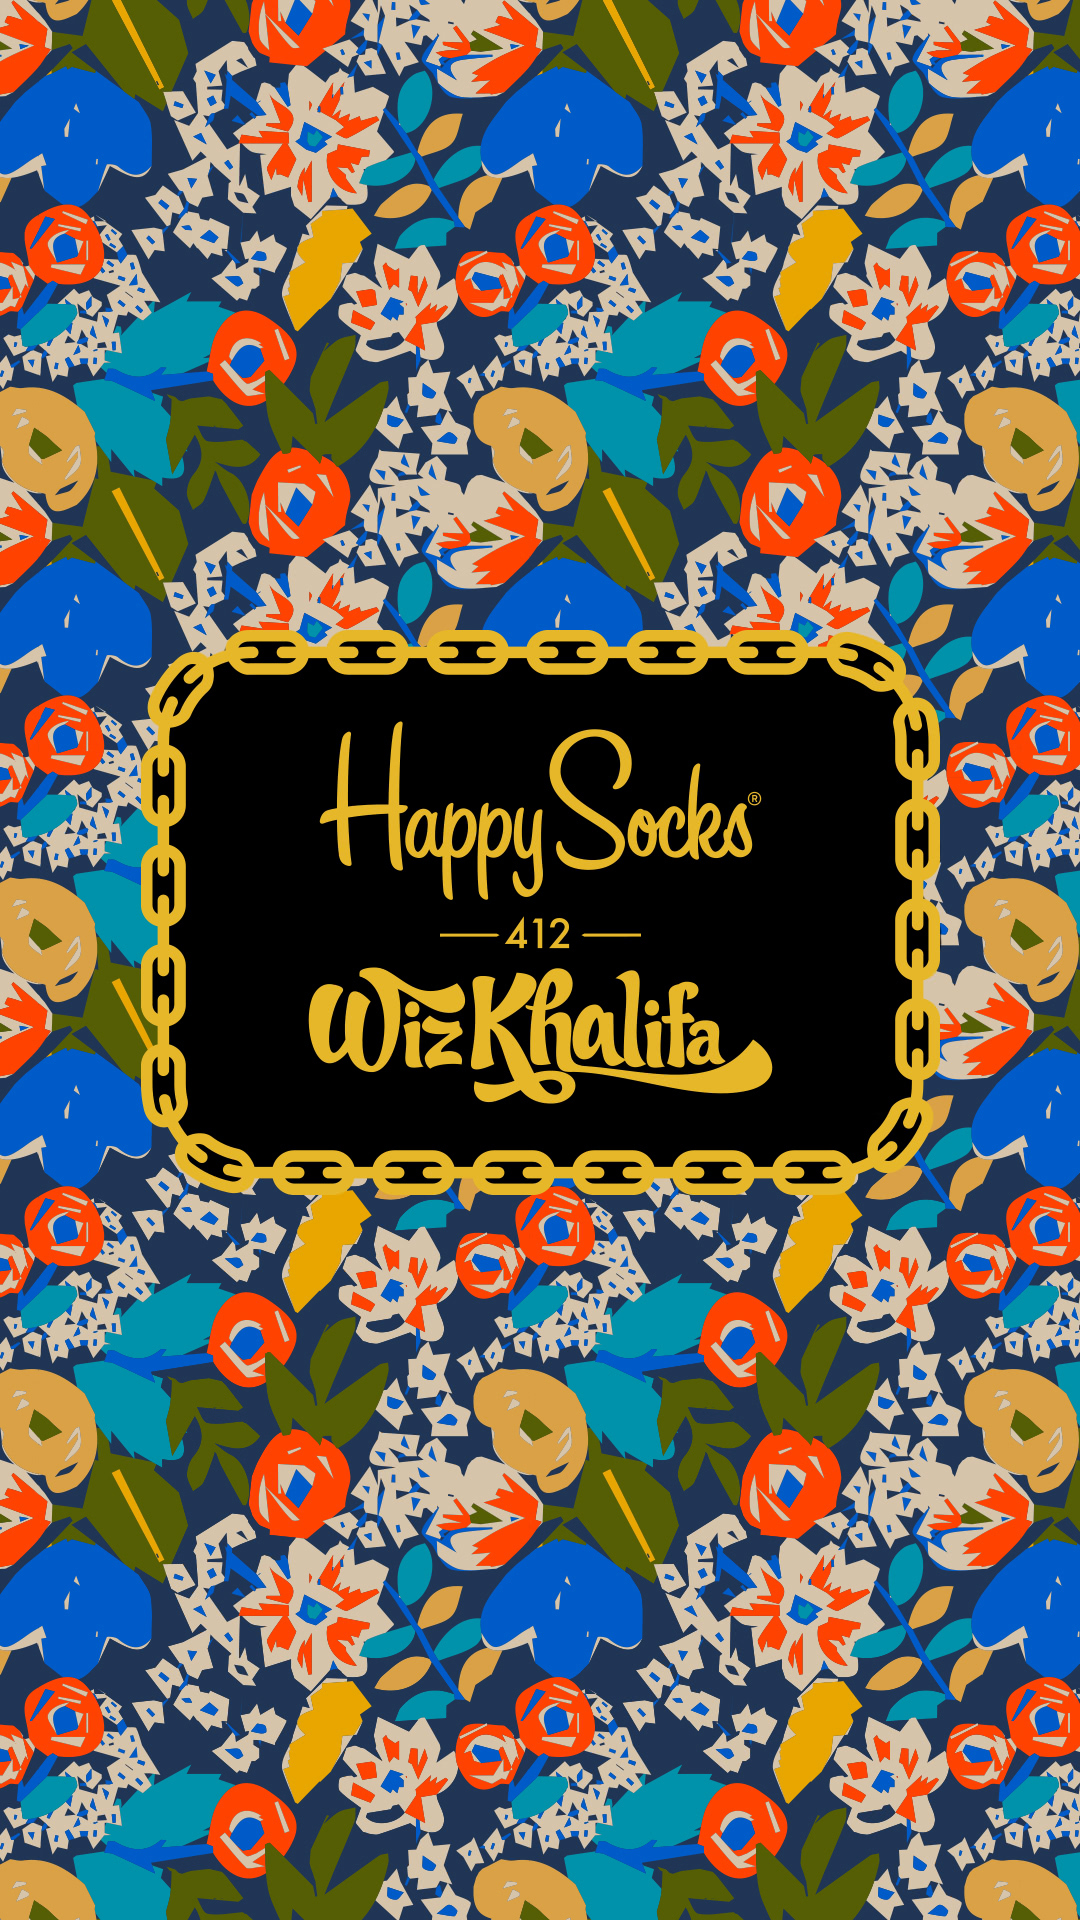 Limited edition collab: Happy Socks x Wiz Khalifa